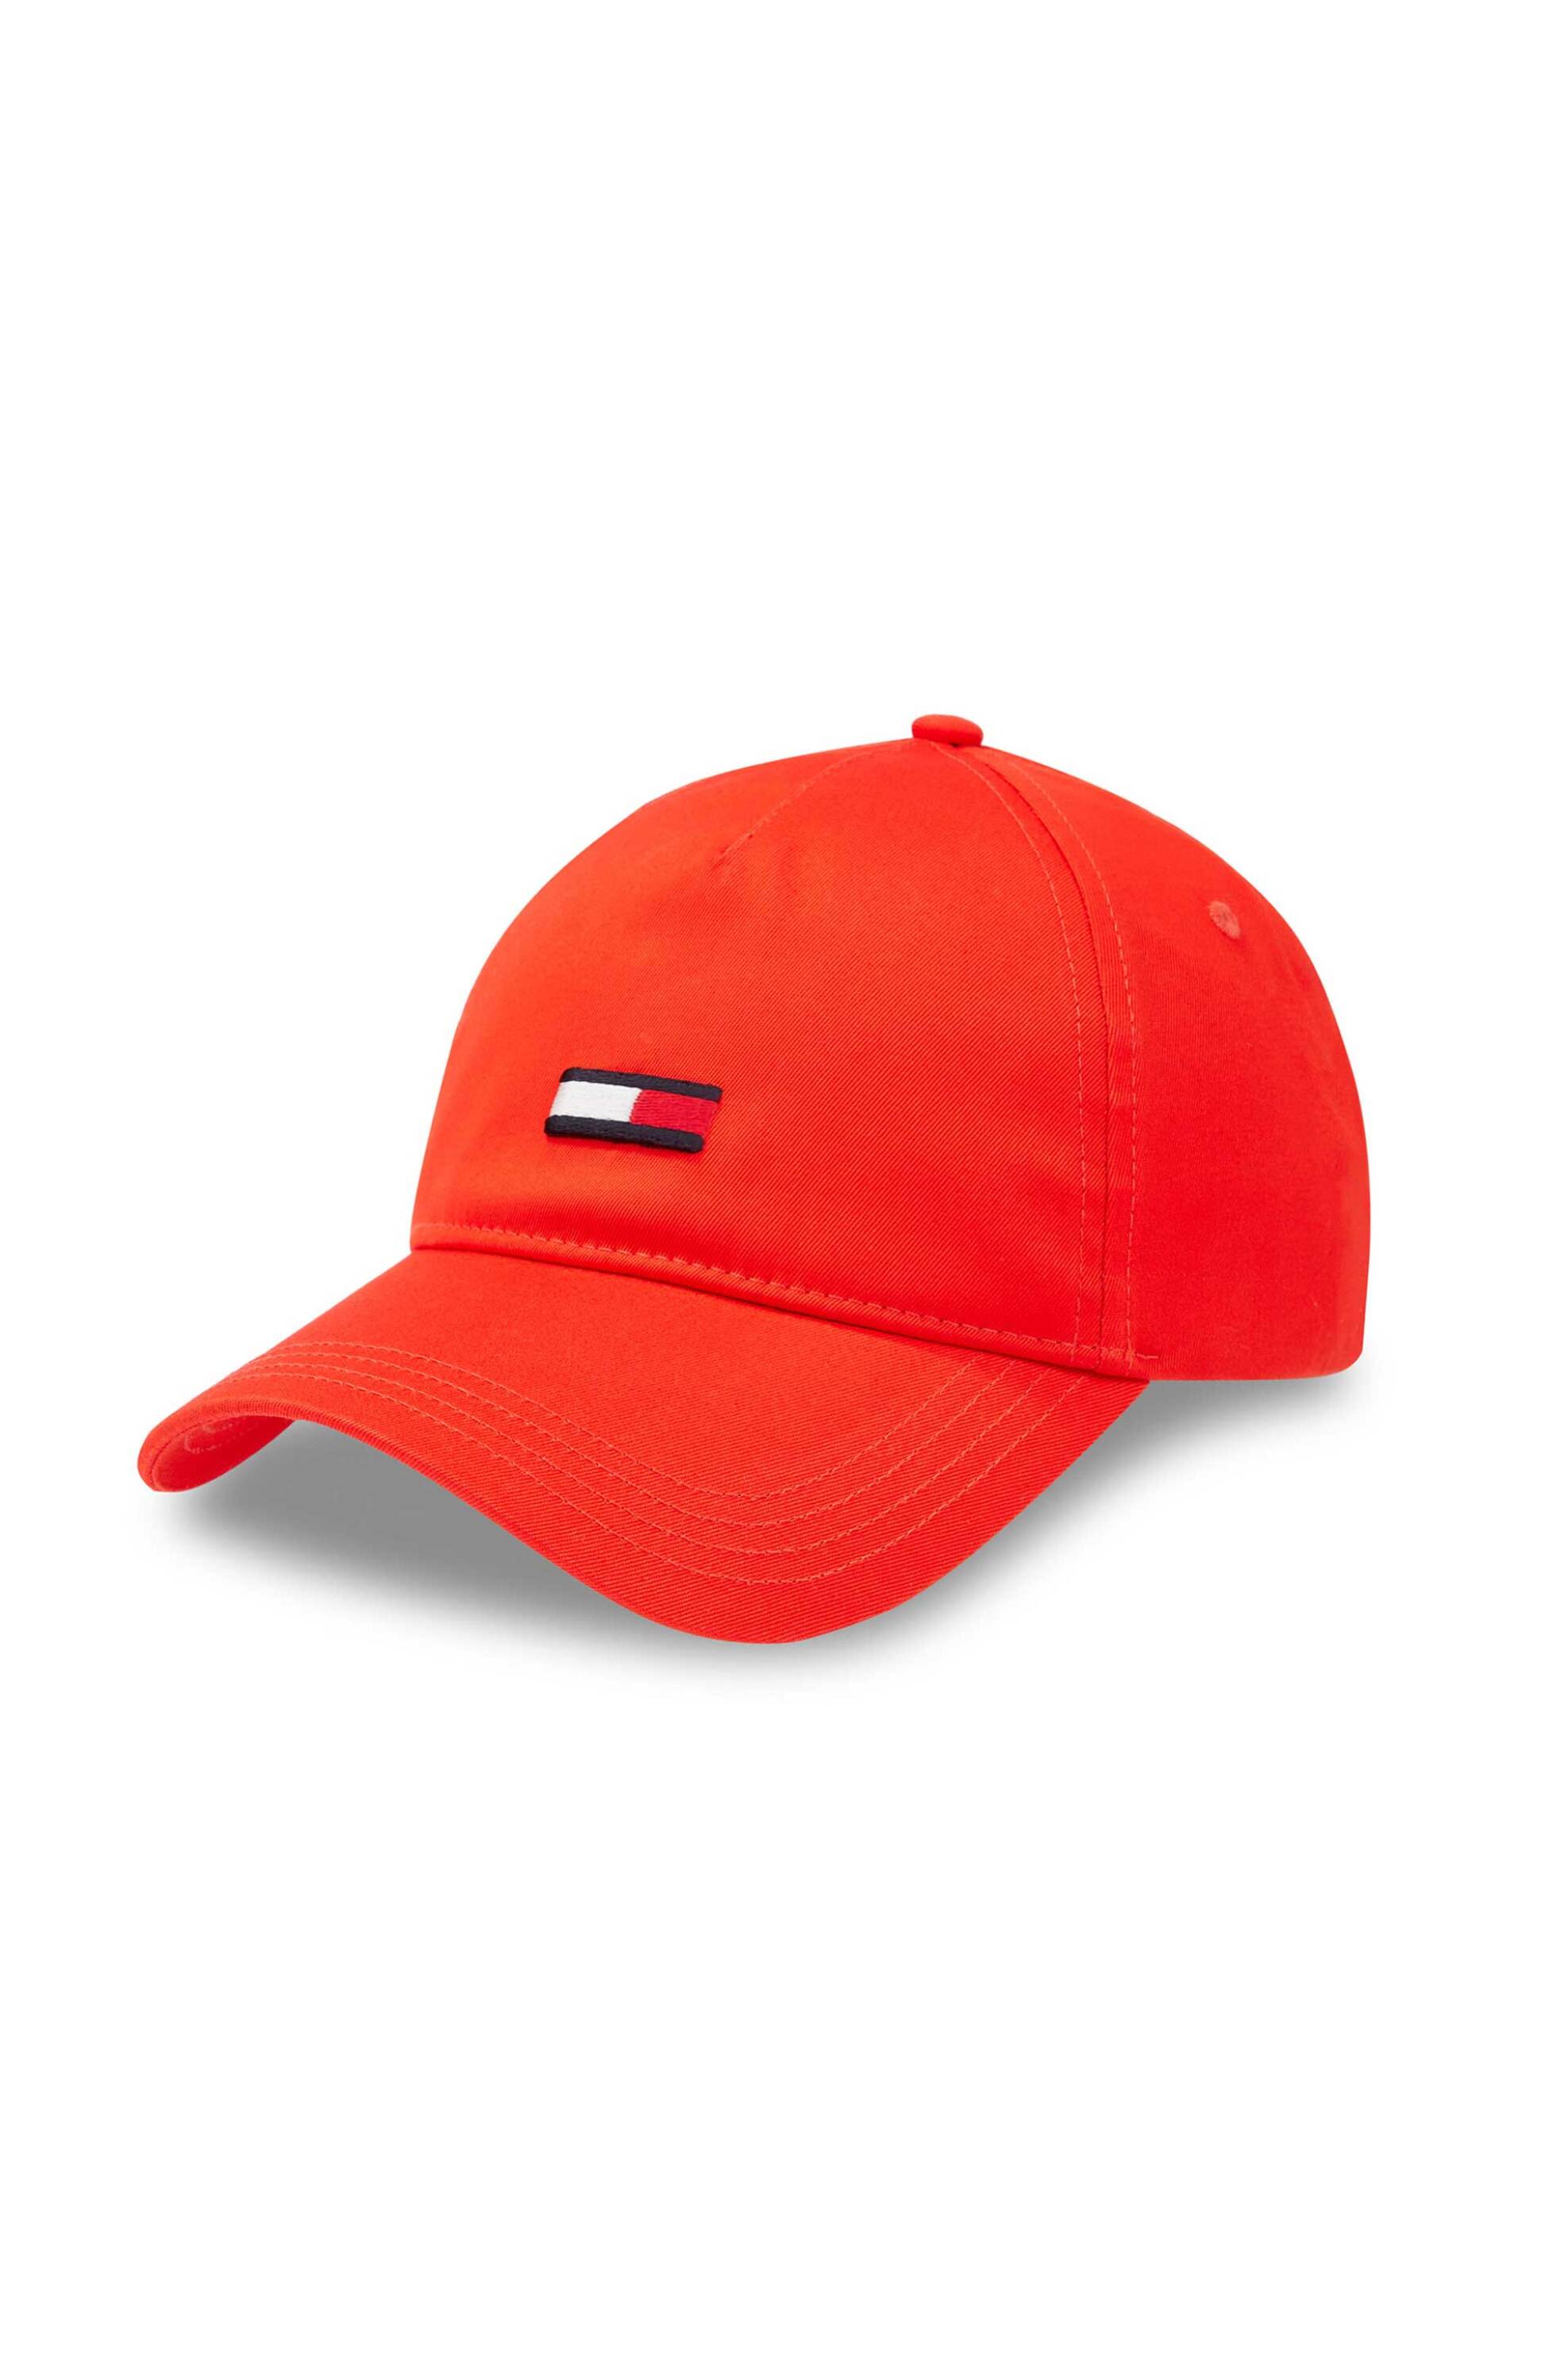 Ανδρική Μόδα > Ανδρικά Αξεσουάρ > Ανδρικά Καπέλα & Σκούφοι Tommy Jeans ανδρικό καπέλο με κεντημένο λογότυπο - AM0AM11692 Πορτοκαλί